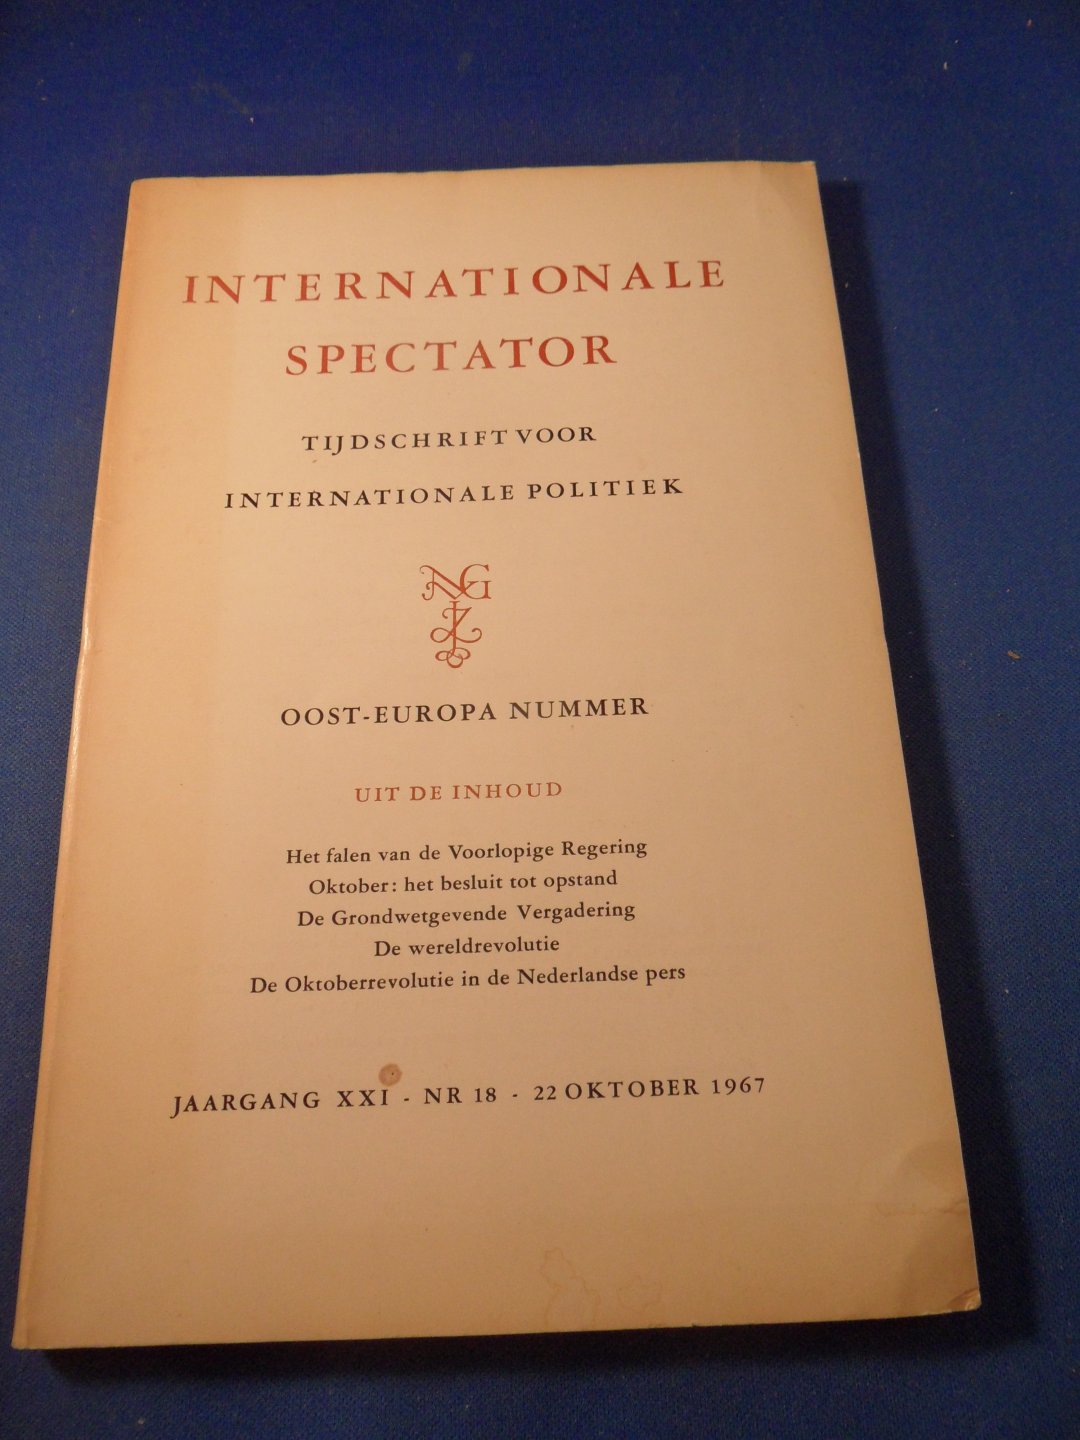  - Internationale Spectator - Tijdschrift voor internationale politiek - Oost-Europa nummer jaargang XXI  nr.18 1967